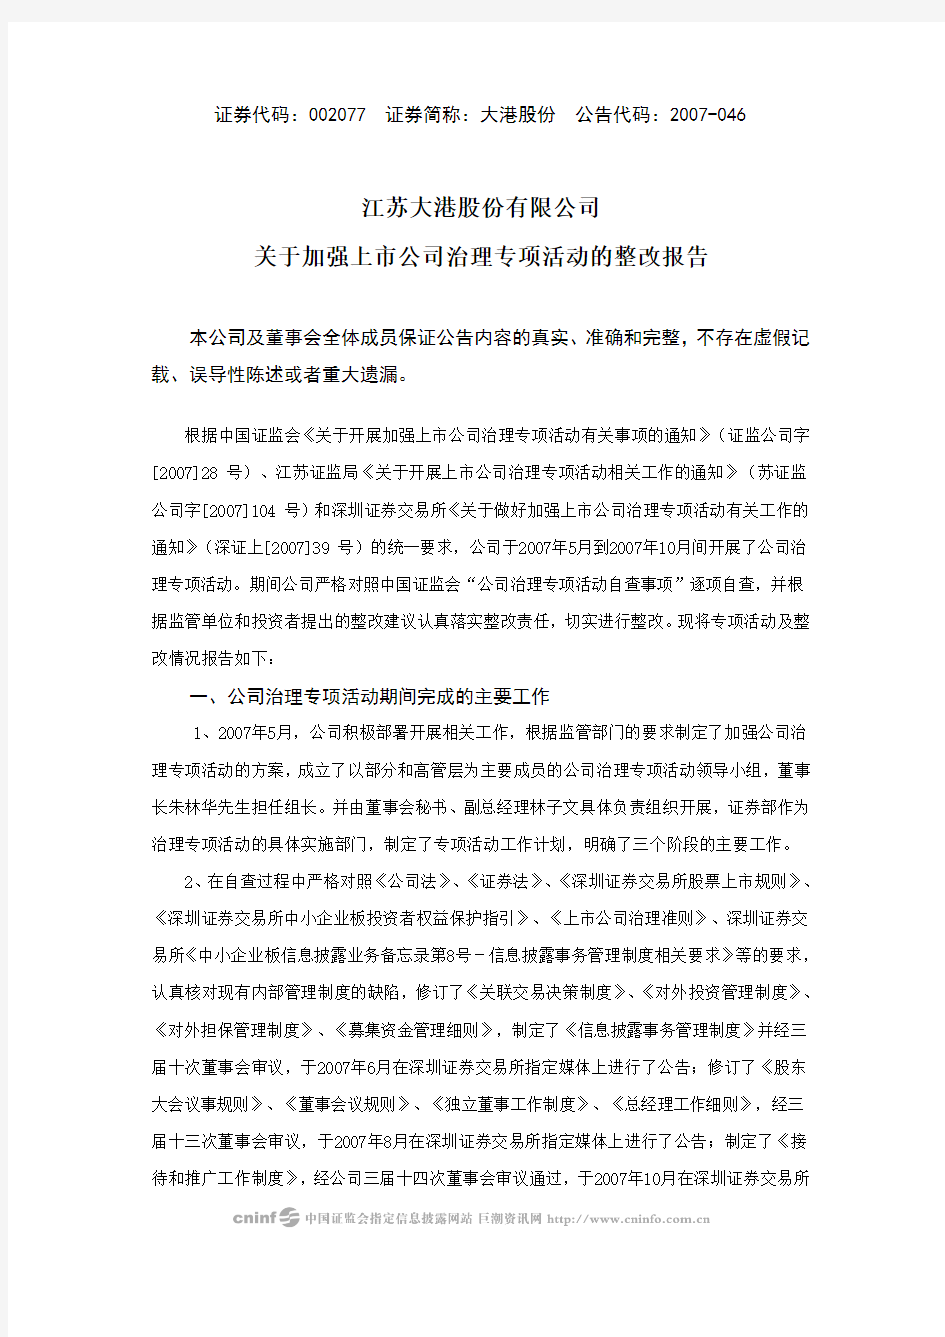 江苏大港股份有限公司关于加强上市公司治理专项活动的整改报告